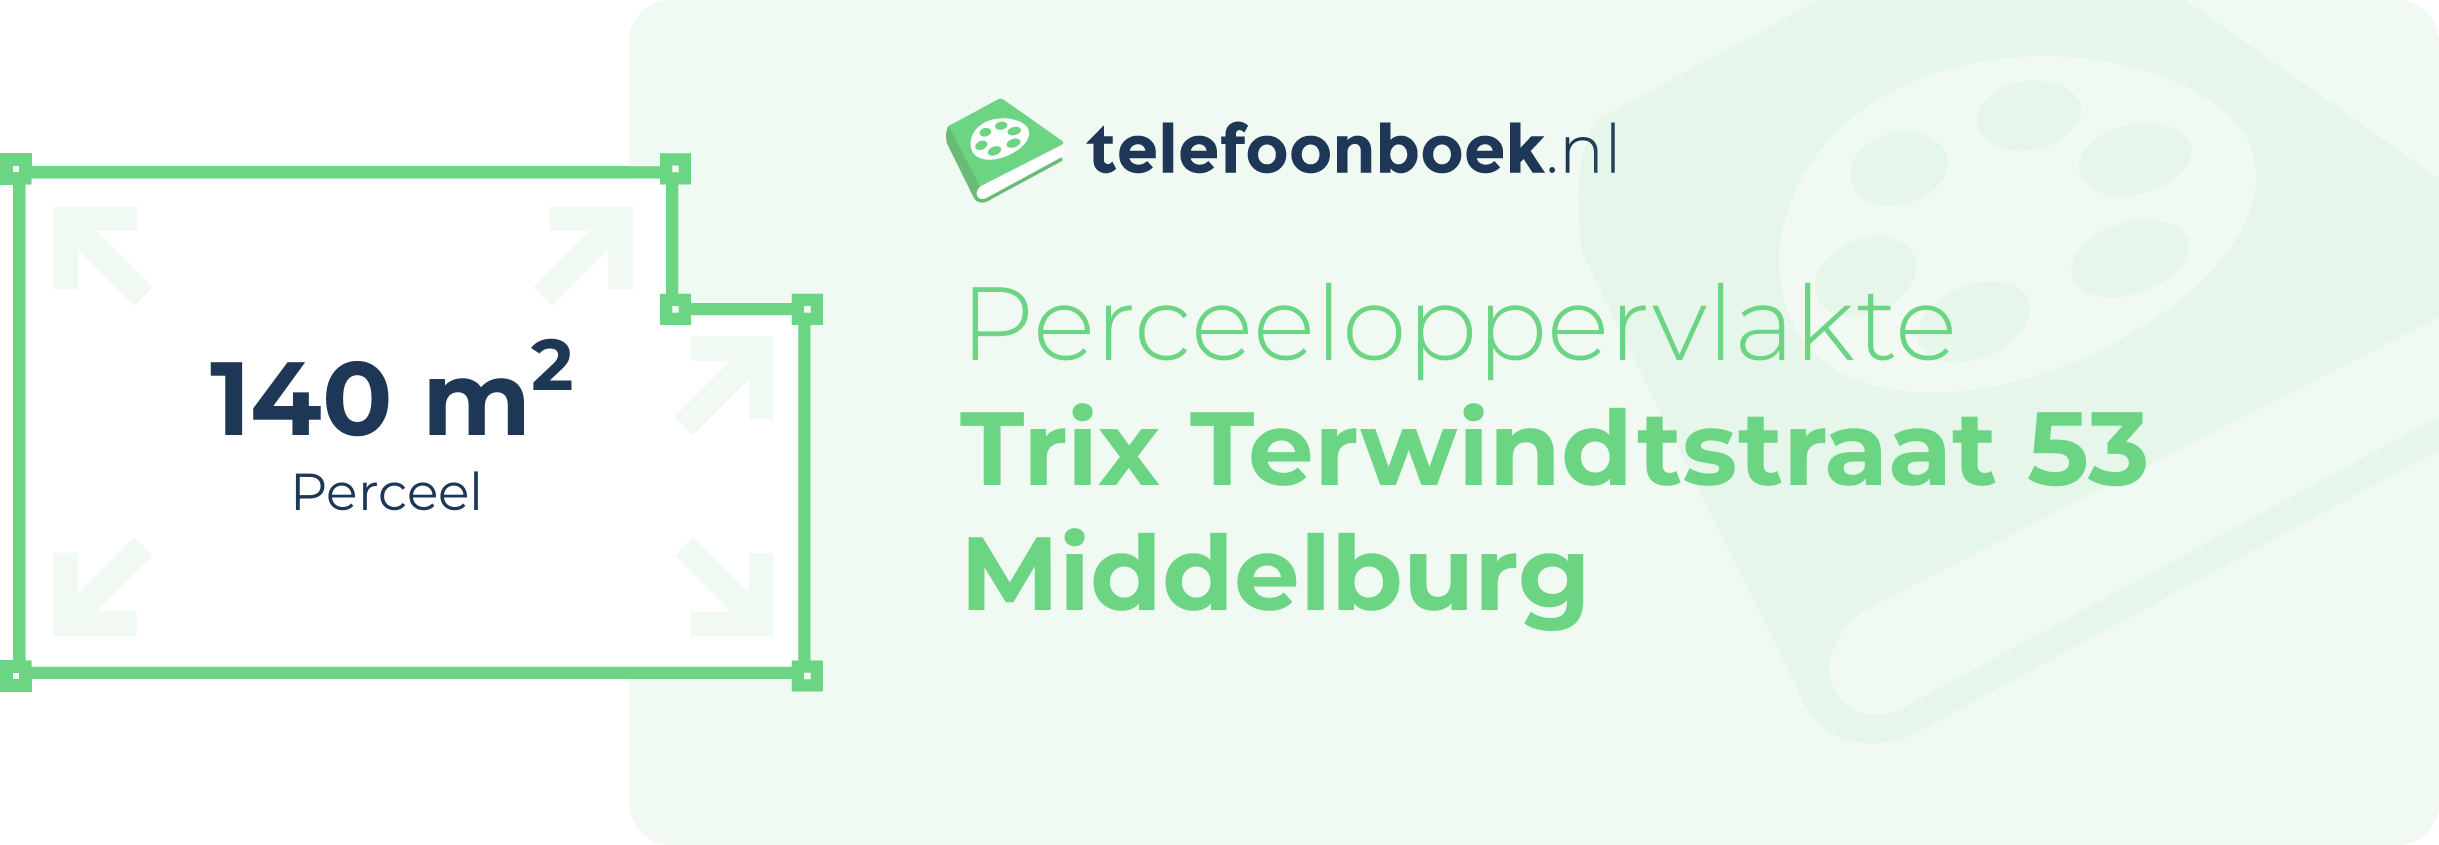 Perceeloppervlakte Trix Terwindtstraat 53 Middelburg